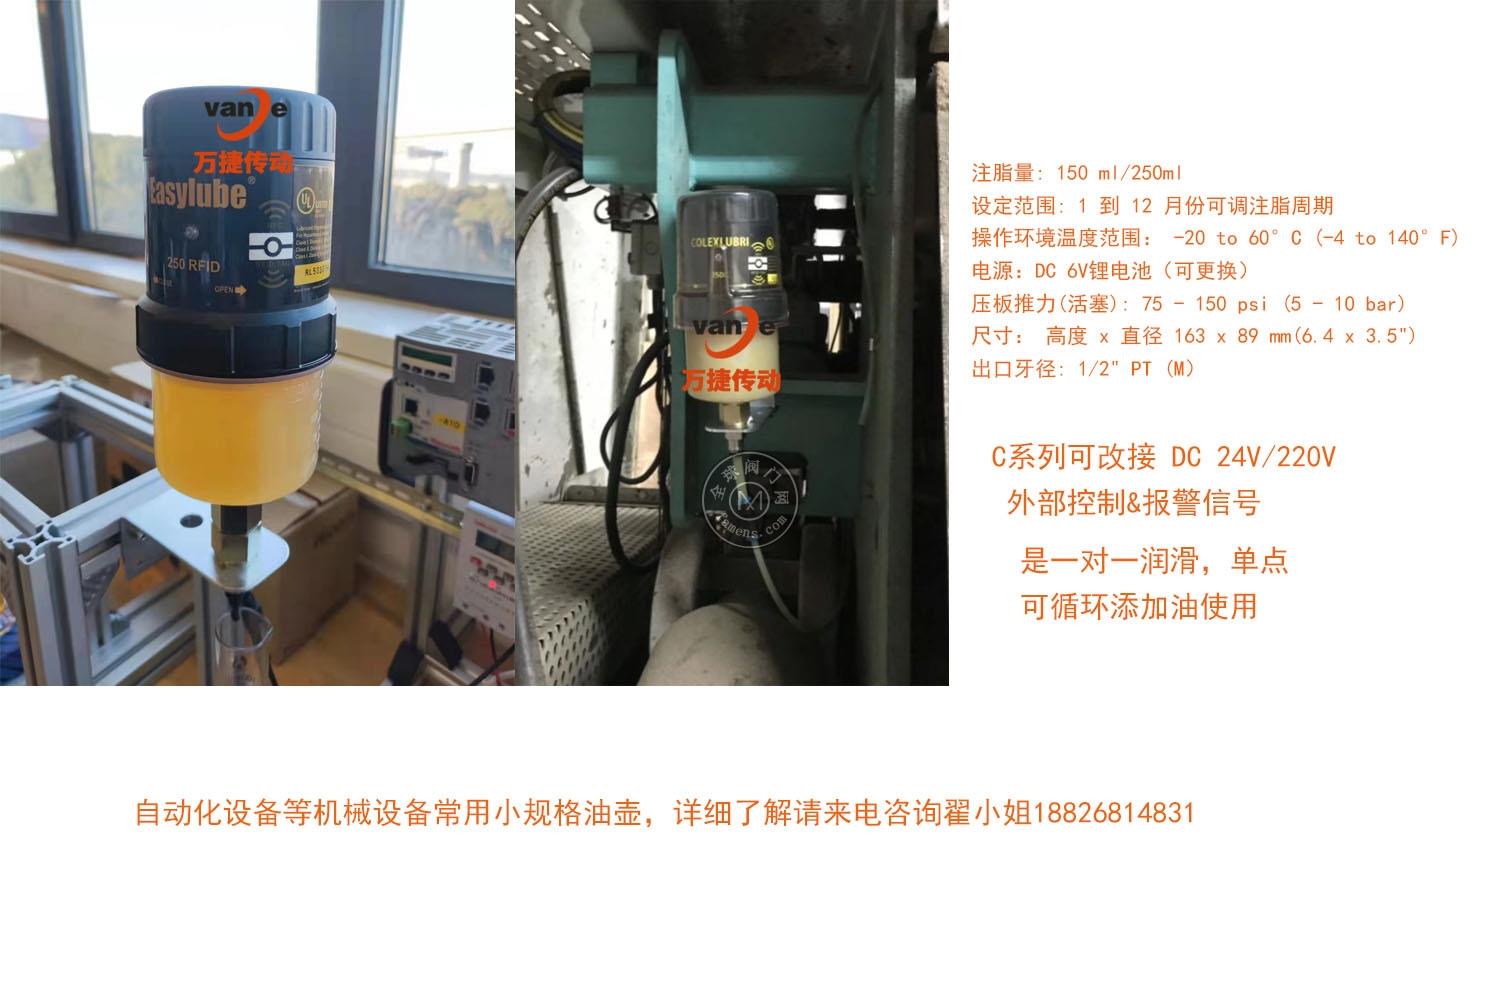 自动加脂器 瑞士Simalub自动注油器 ，台湾单点润滑器Easylube，德国Perma单点润滑，美国Pulsarlube数码加脂